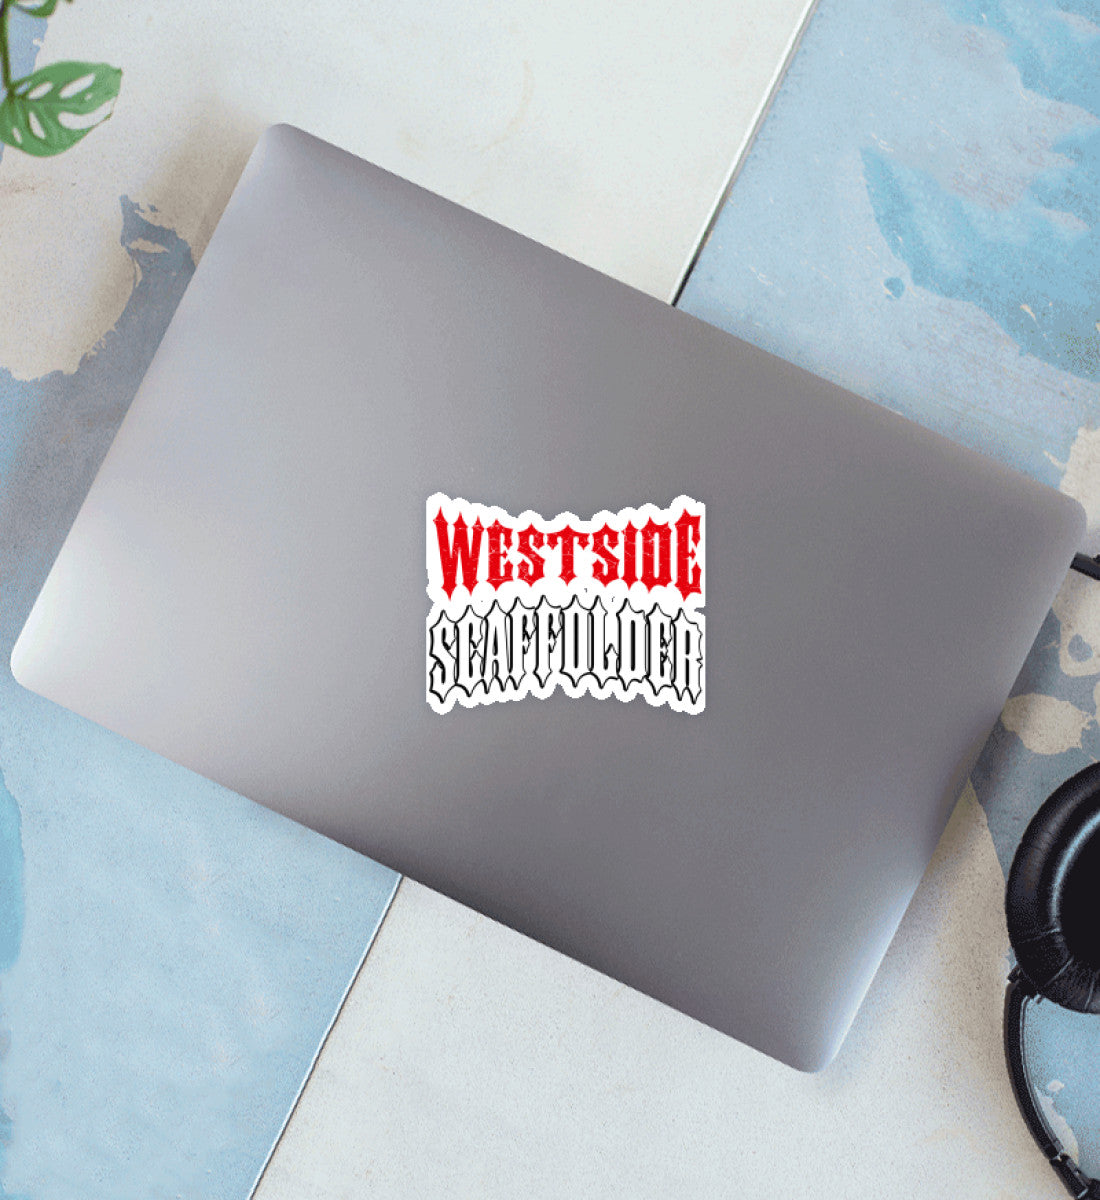 Westside Scaffolder  - Sticker €4.95 Gerüstbauer - Shop >>